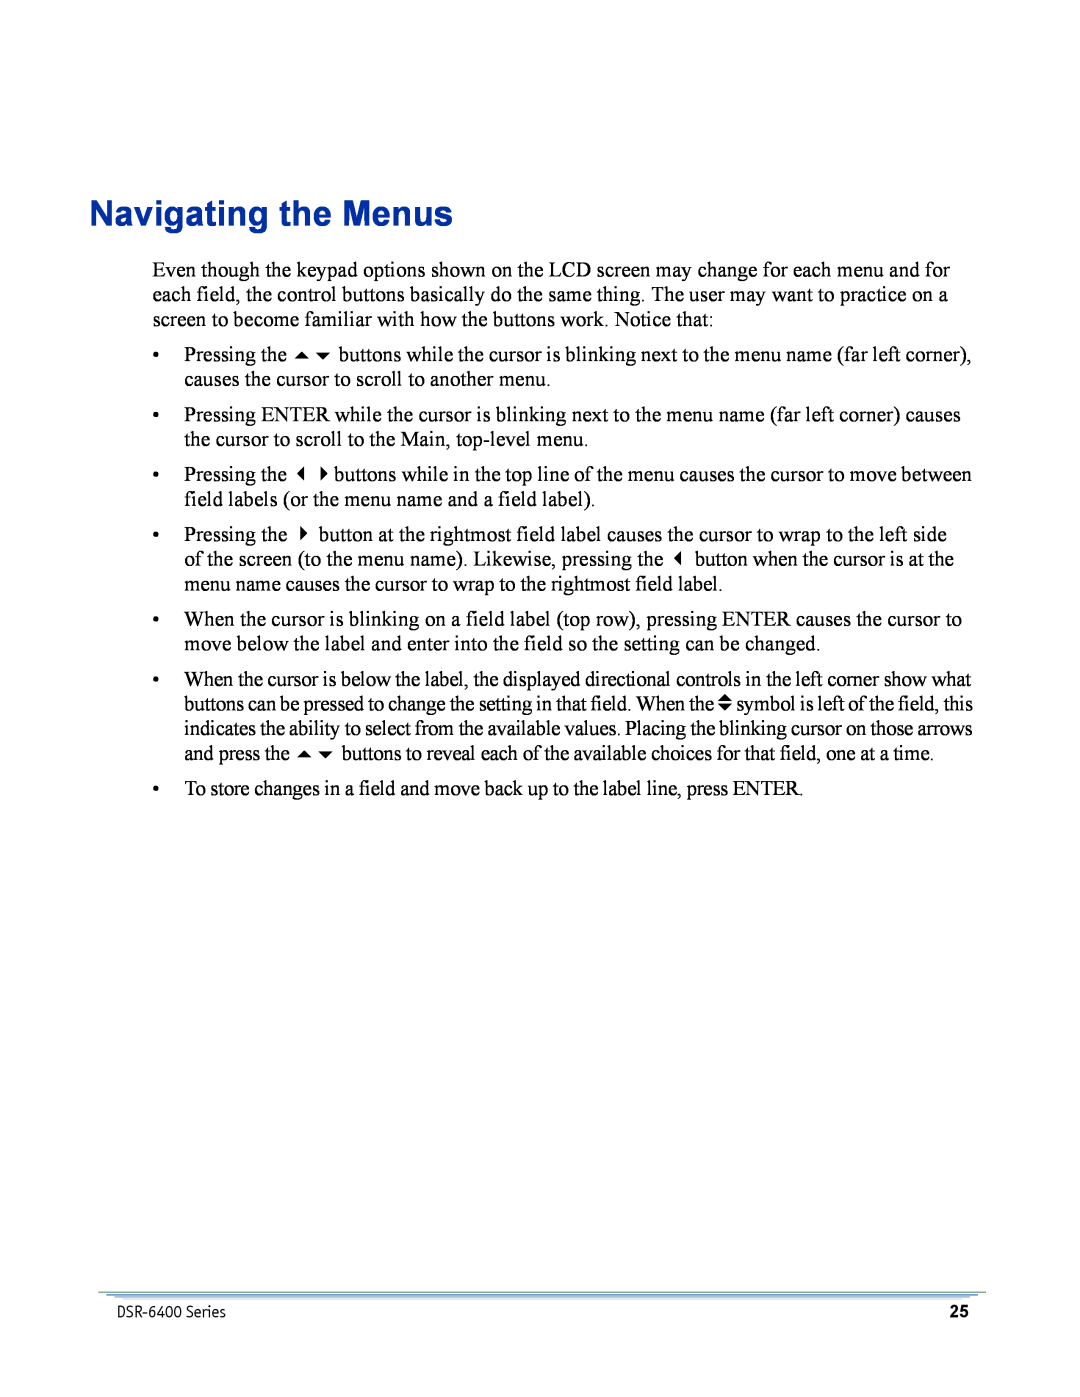 Motorola DSR-6400 manual Navigating the Menus 